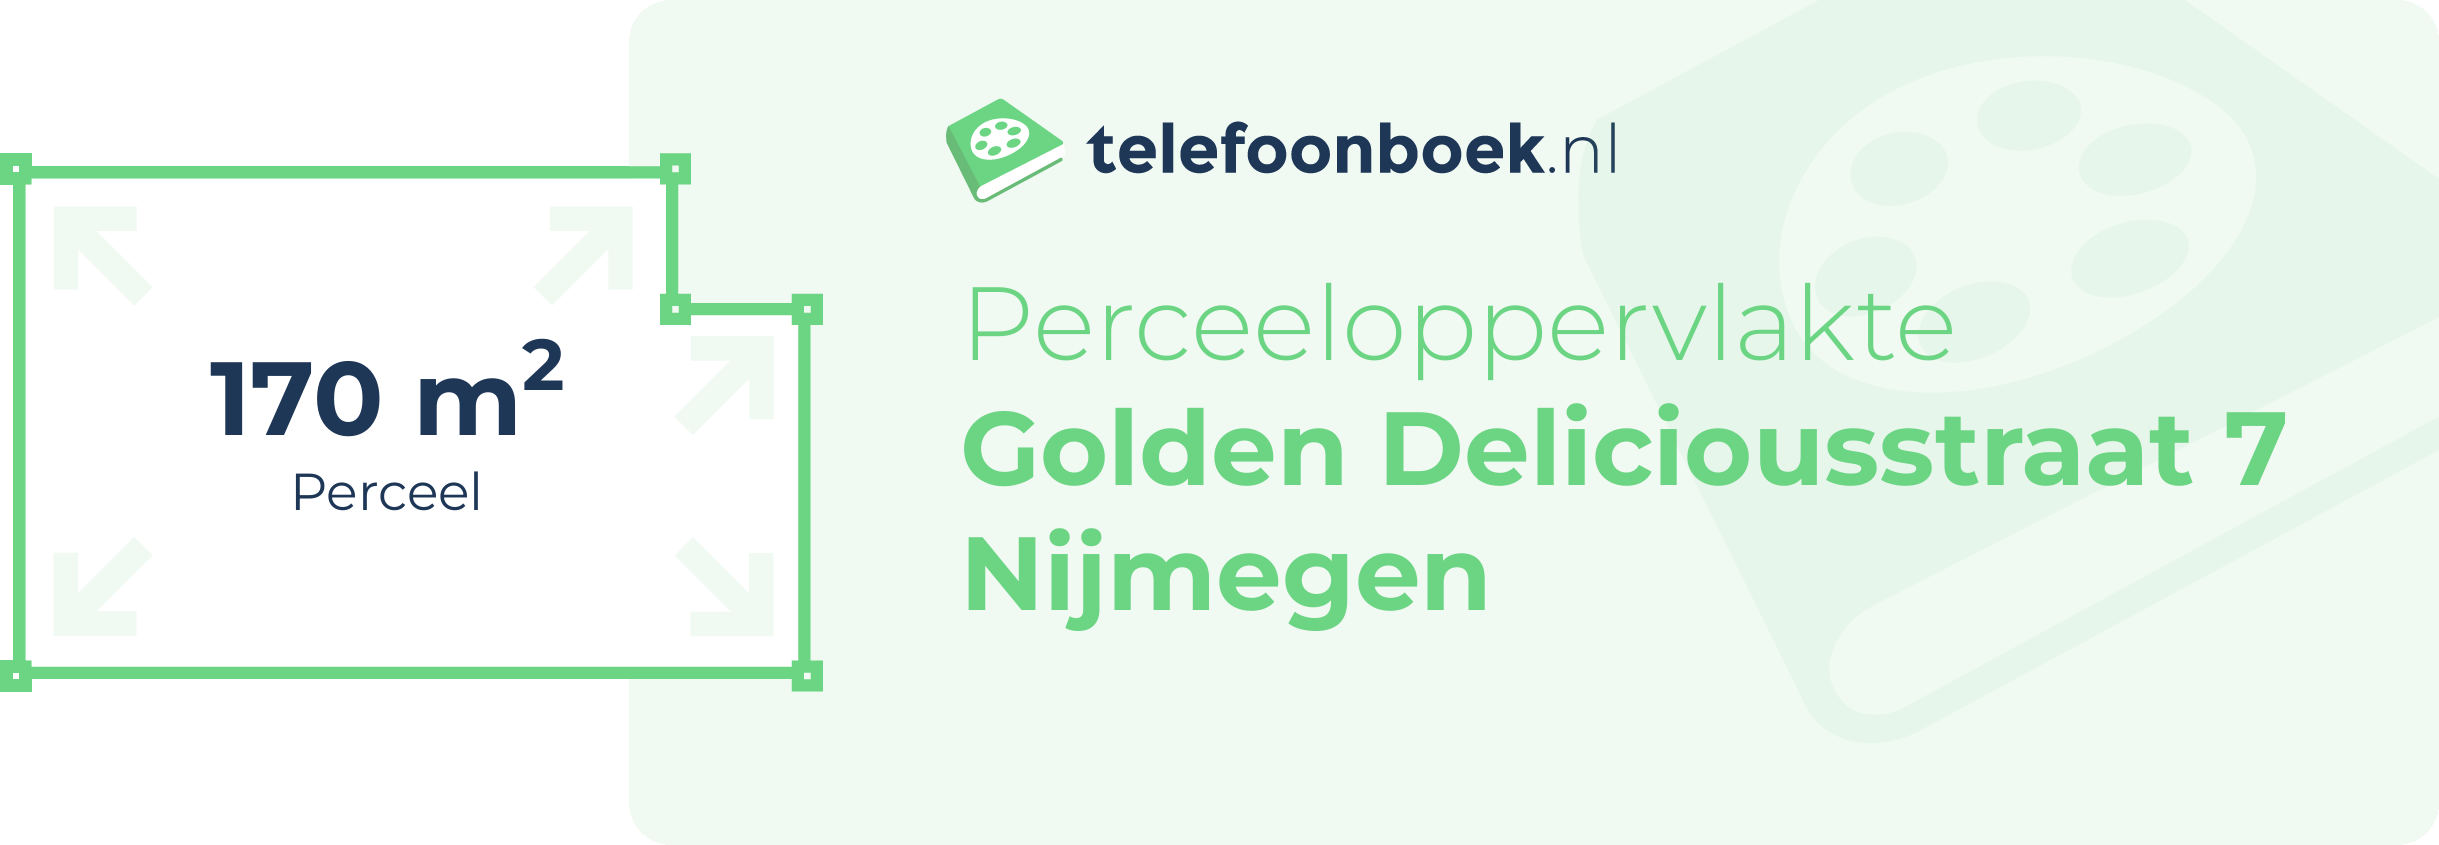 Perceeloppervlakte Golden Deliciousstraat 7 Nijmegen